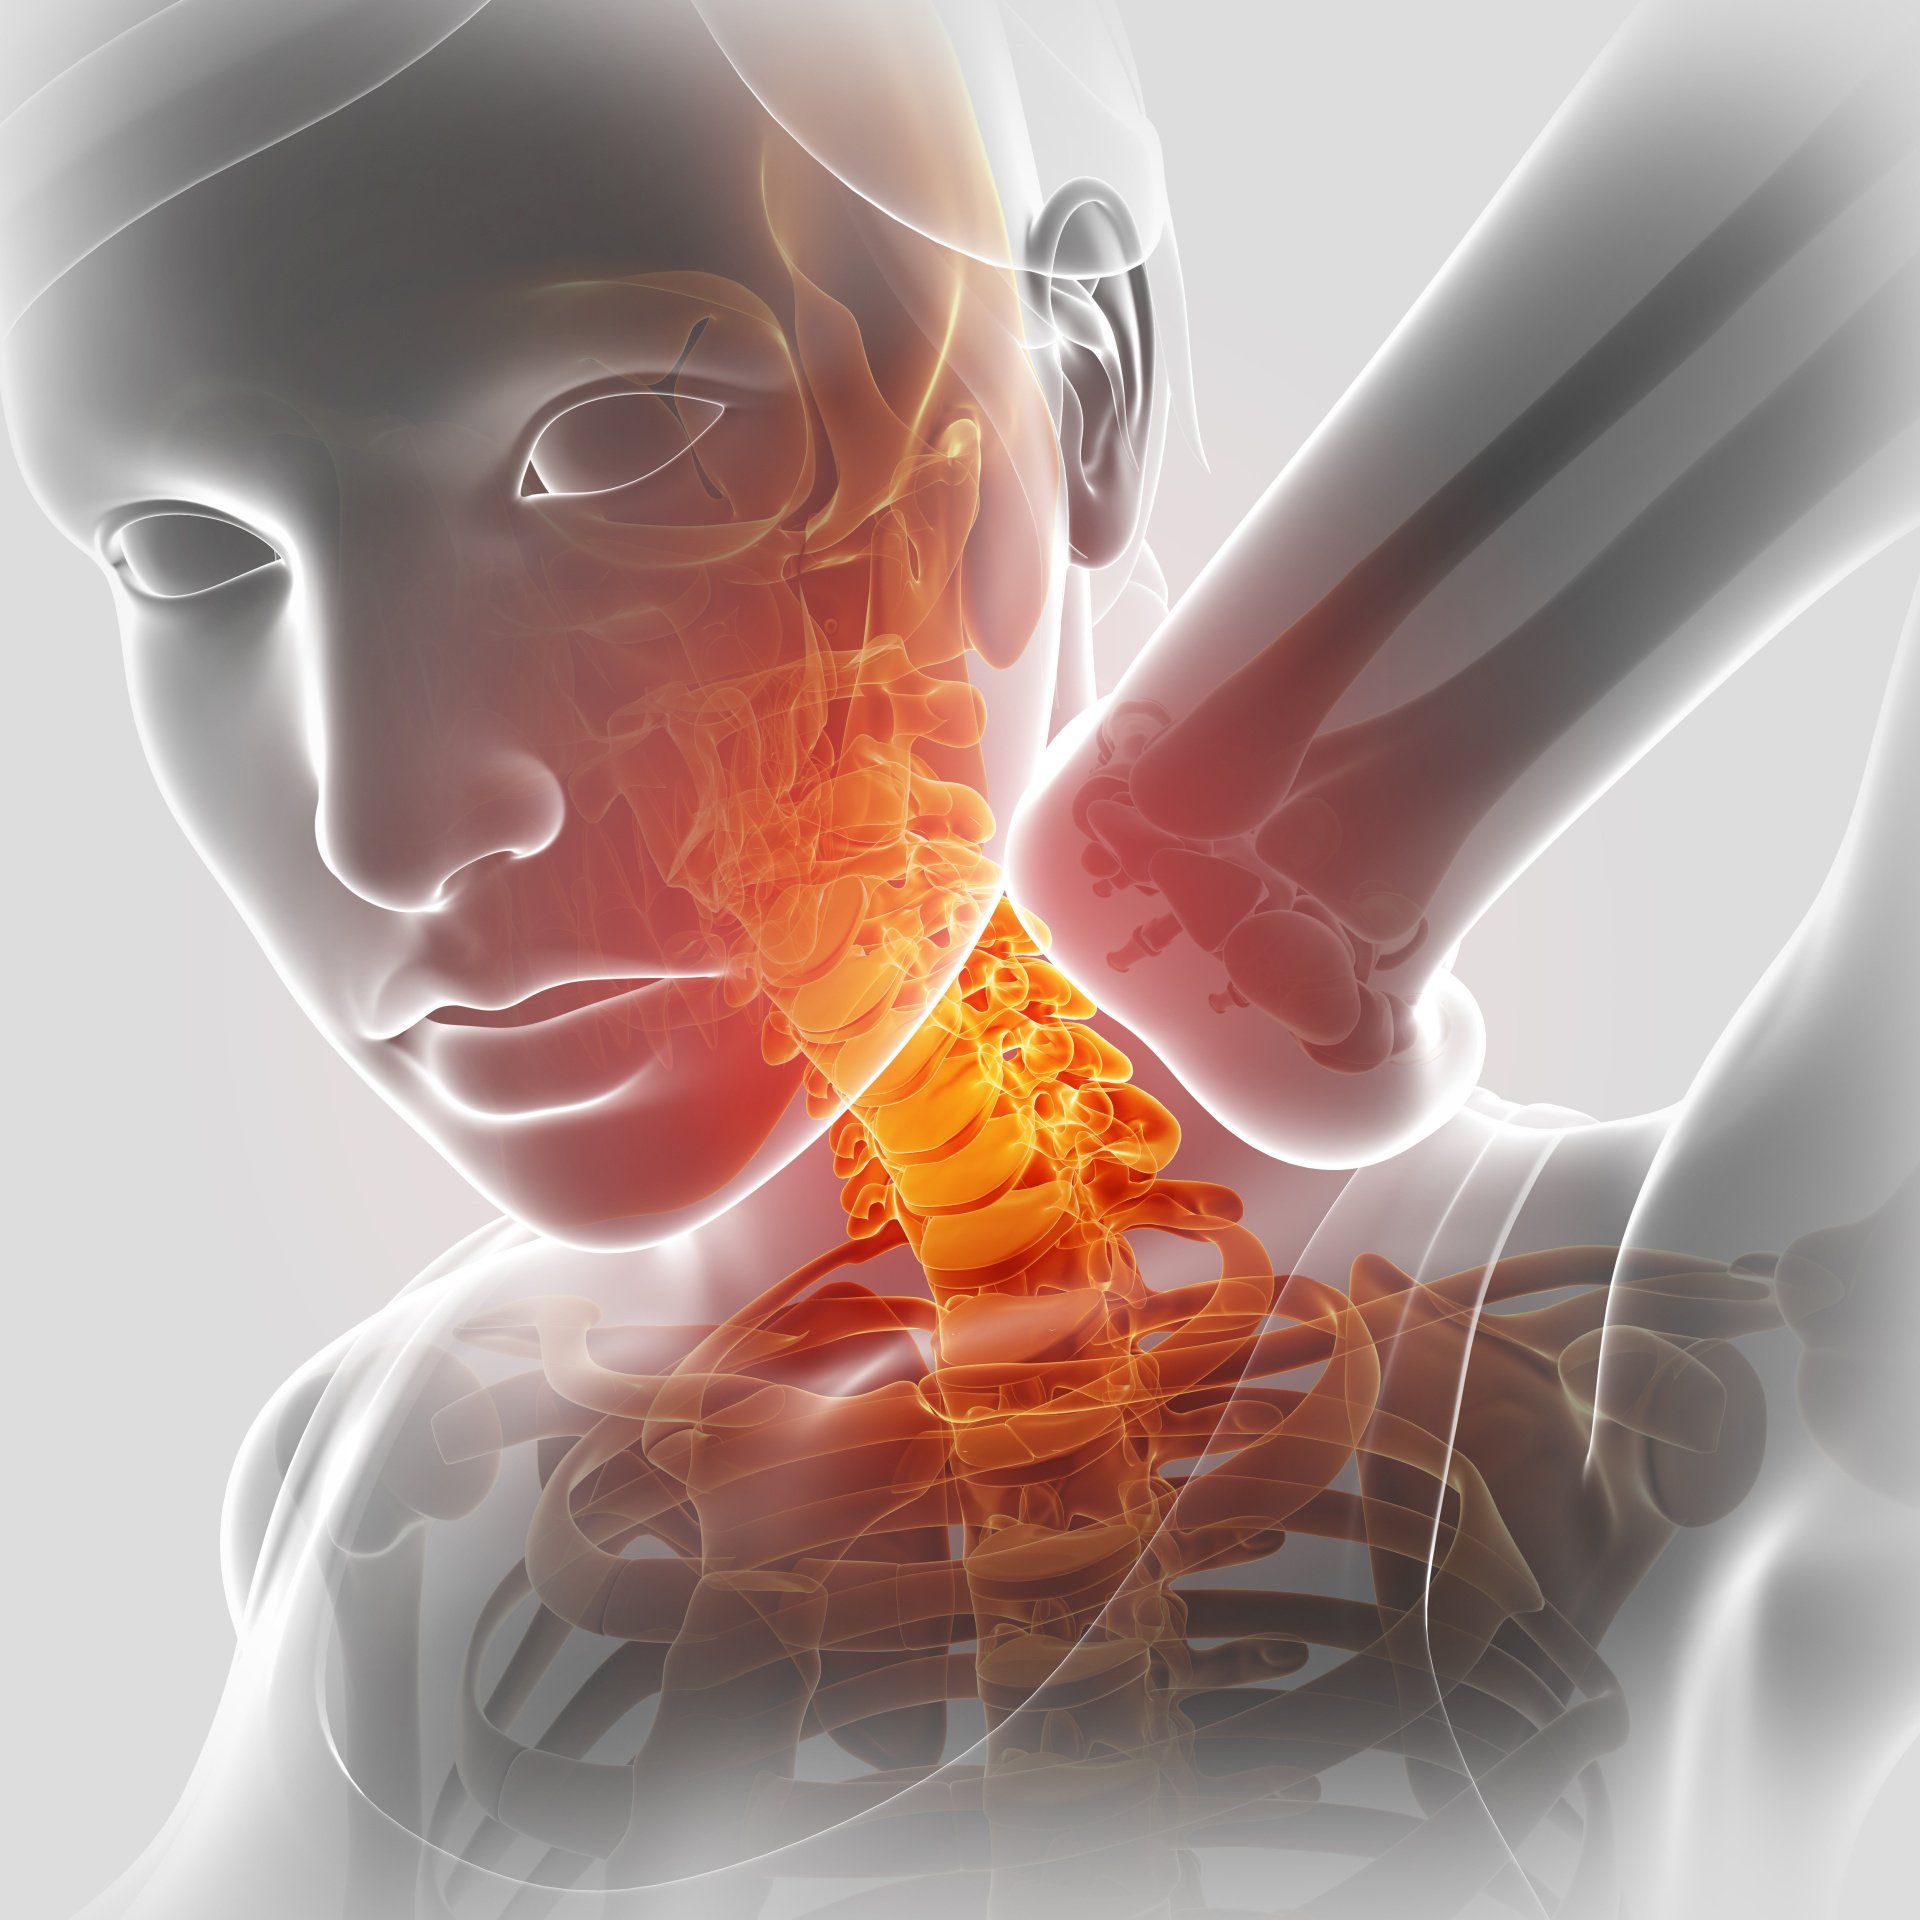 Osteopathie, Chiropraktik, Schiefhals, Halswirbelsäule, verrenkt